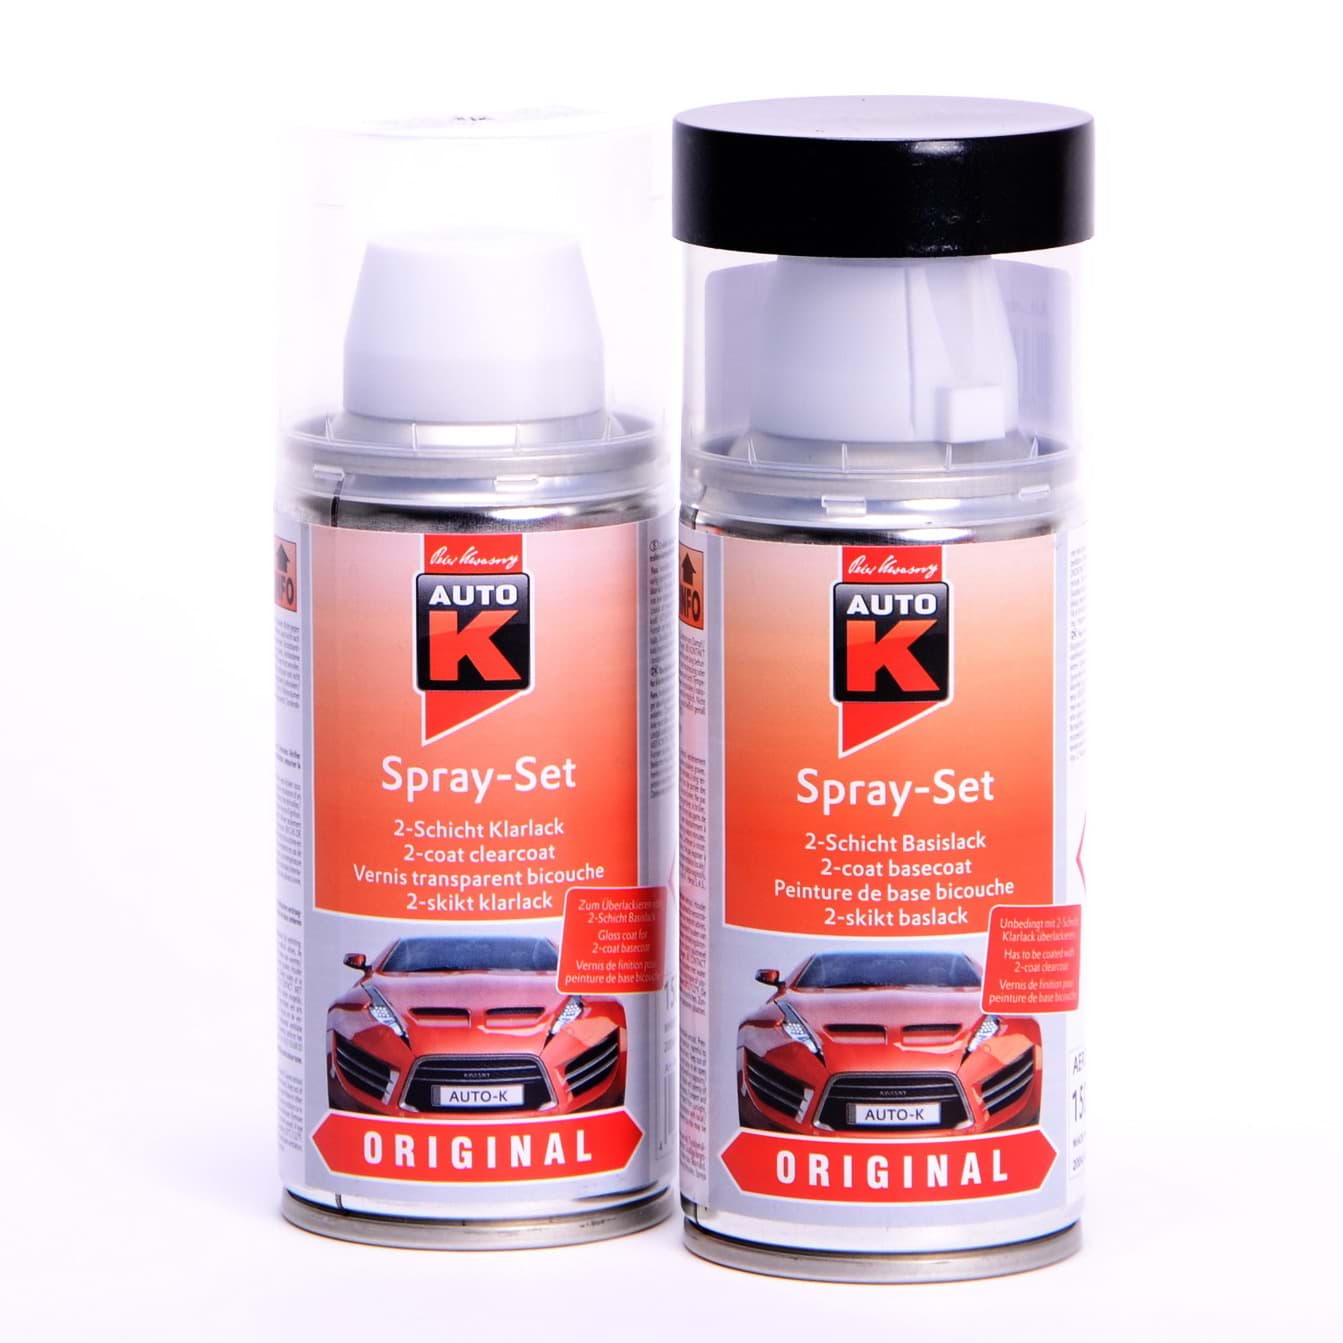 Afbeelding van Auto-K Spray-Set Autolack für Renault 676 Noir Nacre perl met 43380